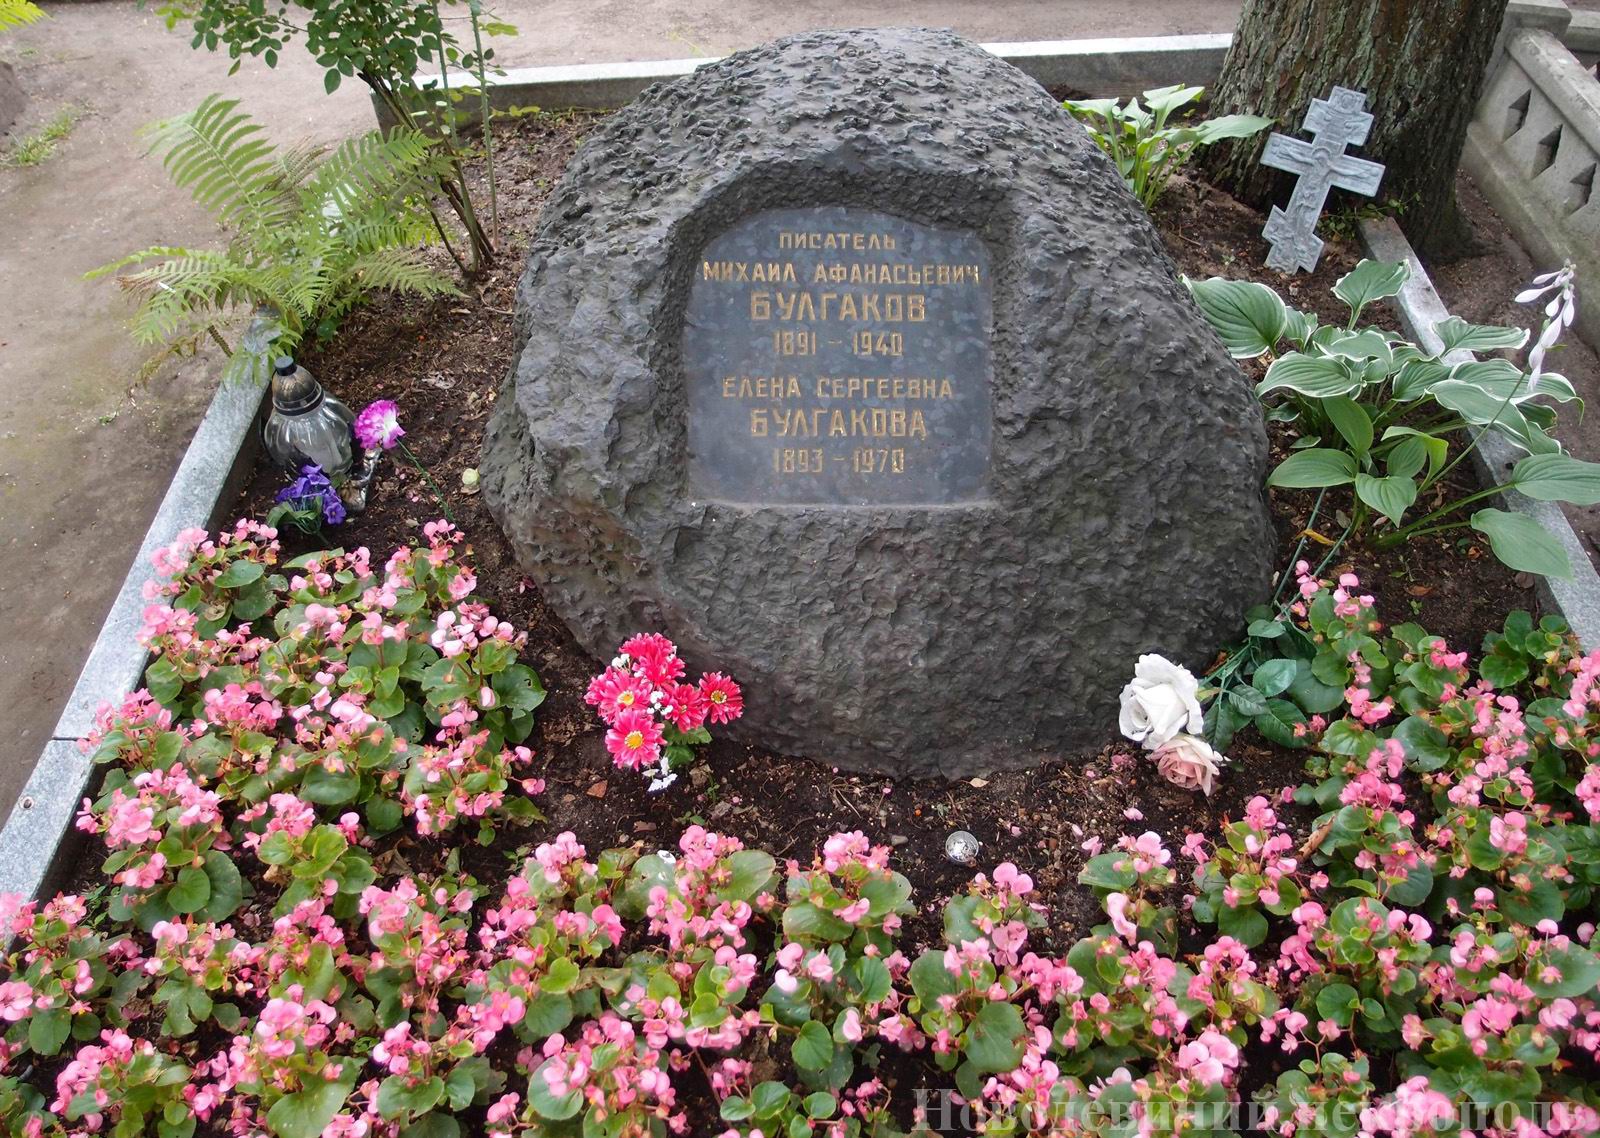 Памятник на могиле Булгаковых М.А. (1891-1940) и Е.С. (1893-1970), на Новодевичьем кладбище (2-21-24).